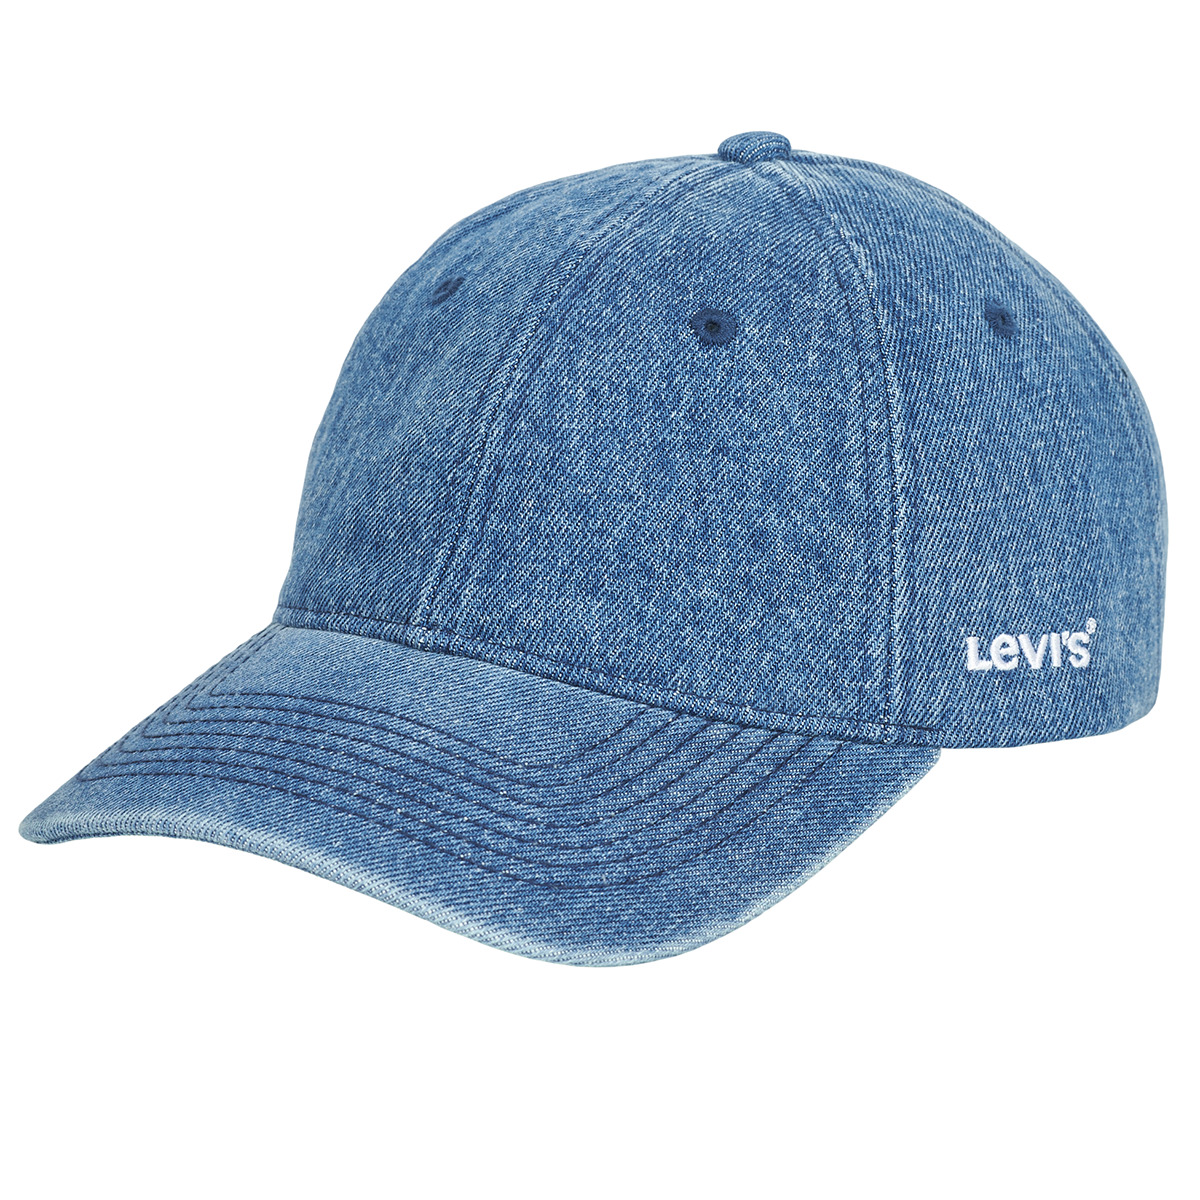 levis  essential cap  men's cap in blue